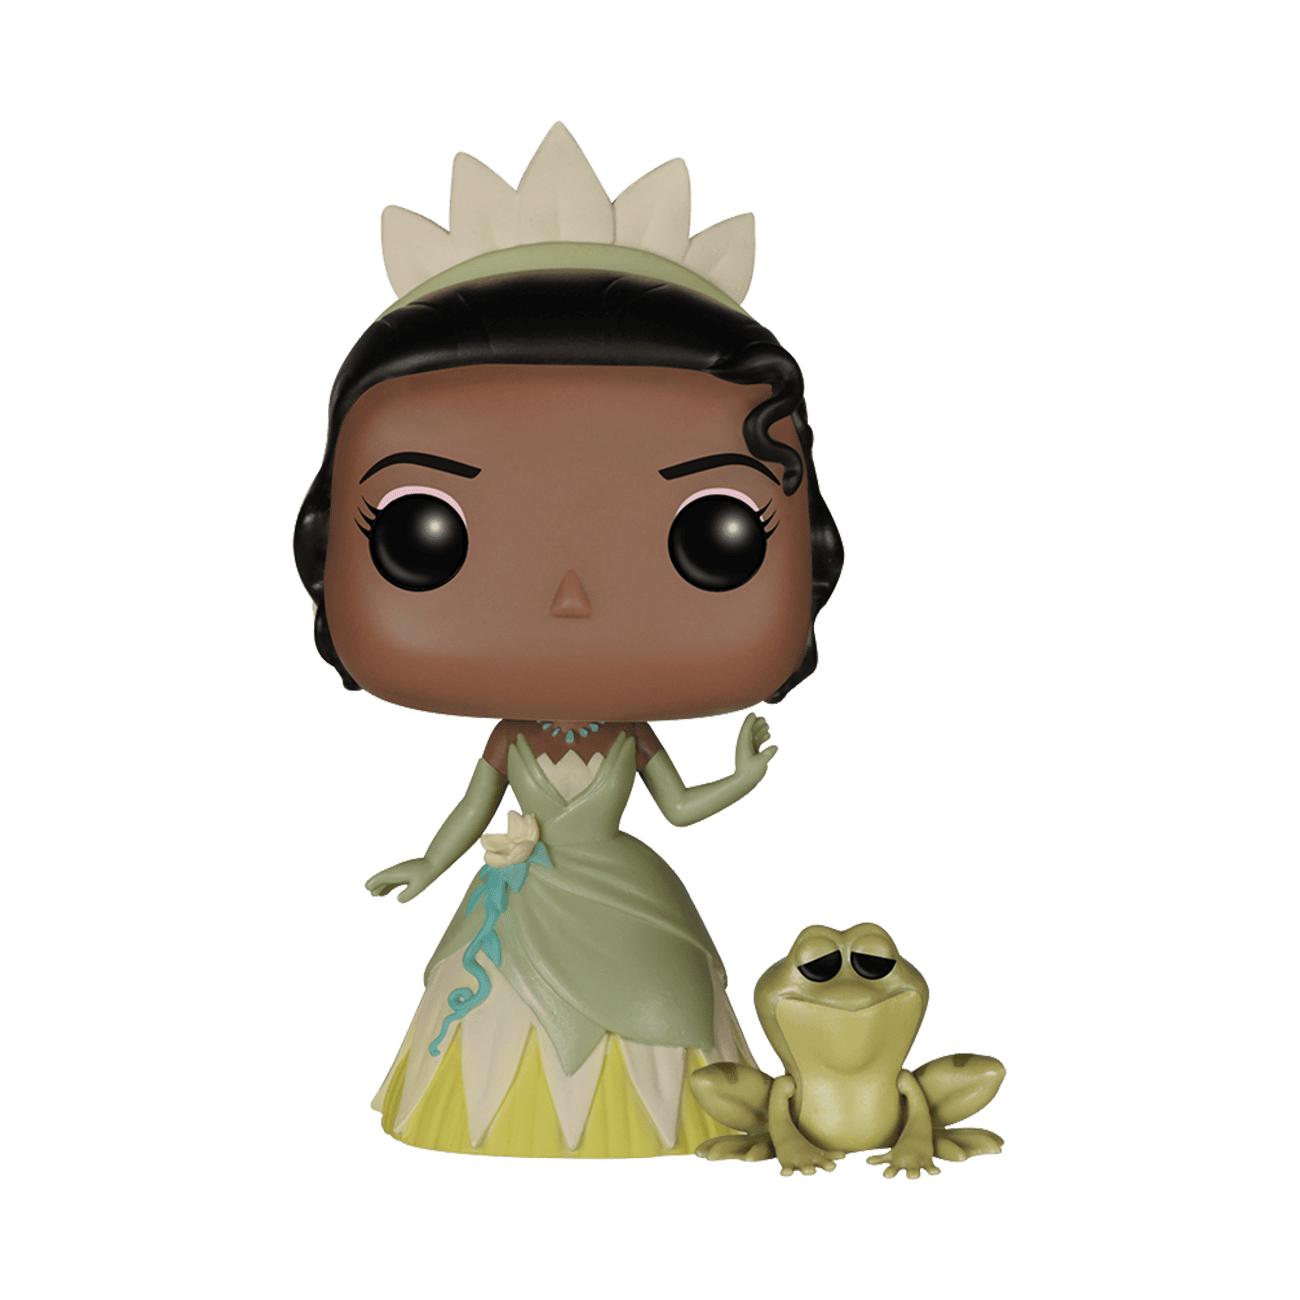 prince naveen princess and the frog